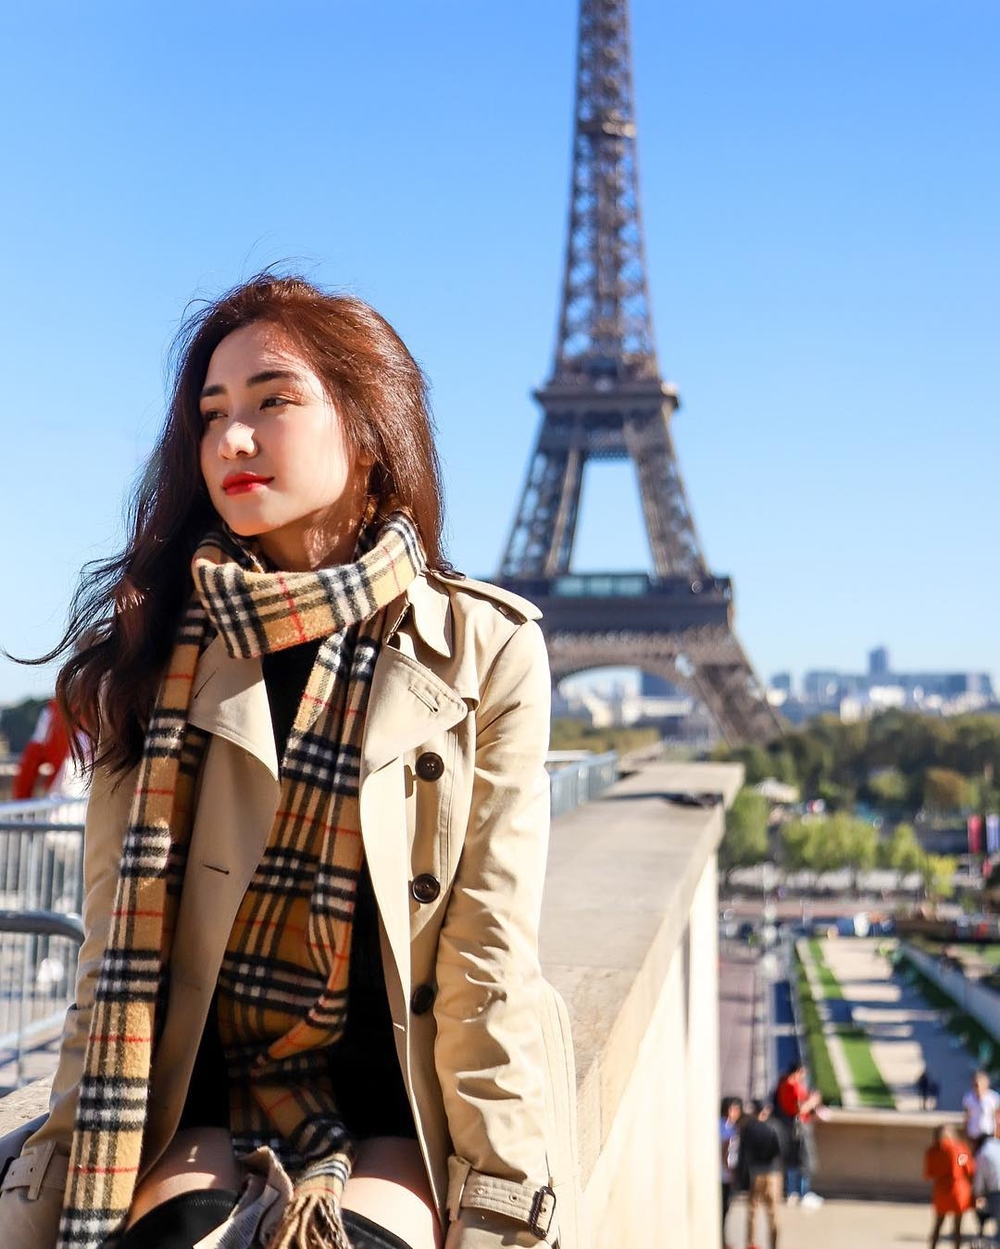 
Hòa Minzy khiến công chúng xuýt xoa khi cập nhật loạt ảnh đang vi vu tại Paris, Pháp - 1 trong 4 kinh đô tráng lệ và đáng đặt chân đến nhất thế giới.